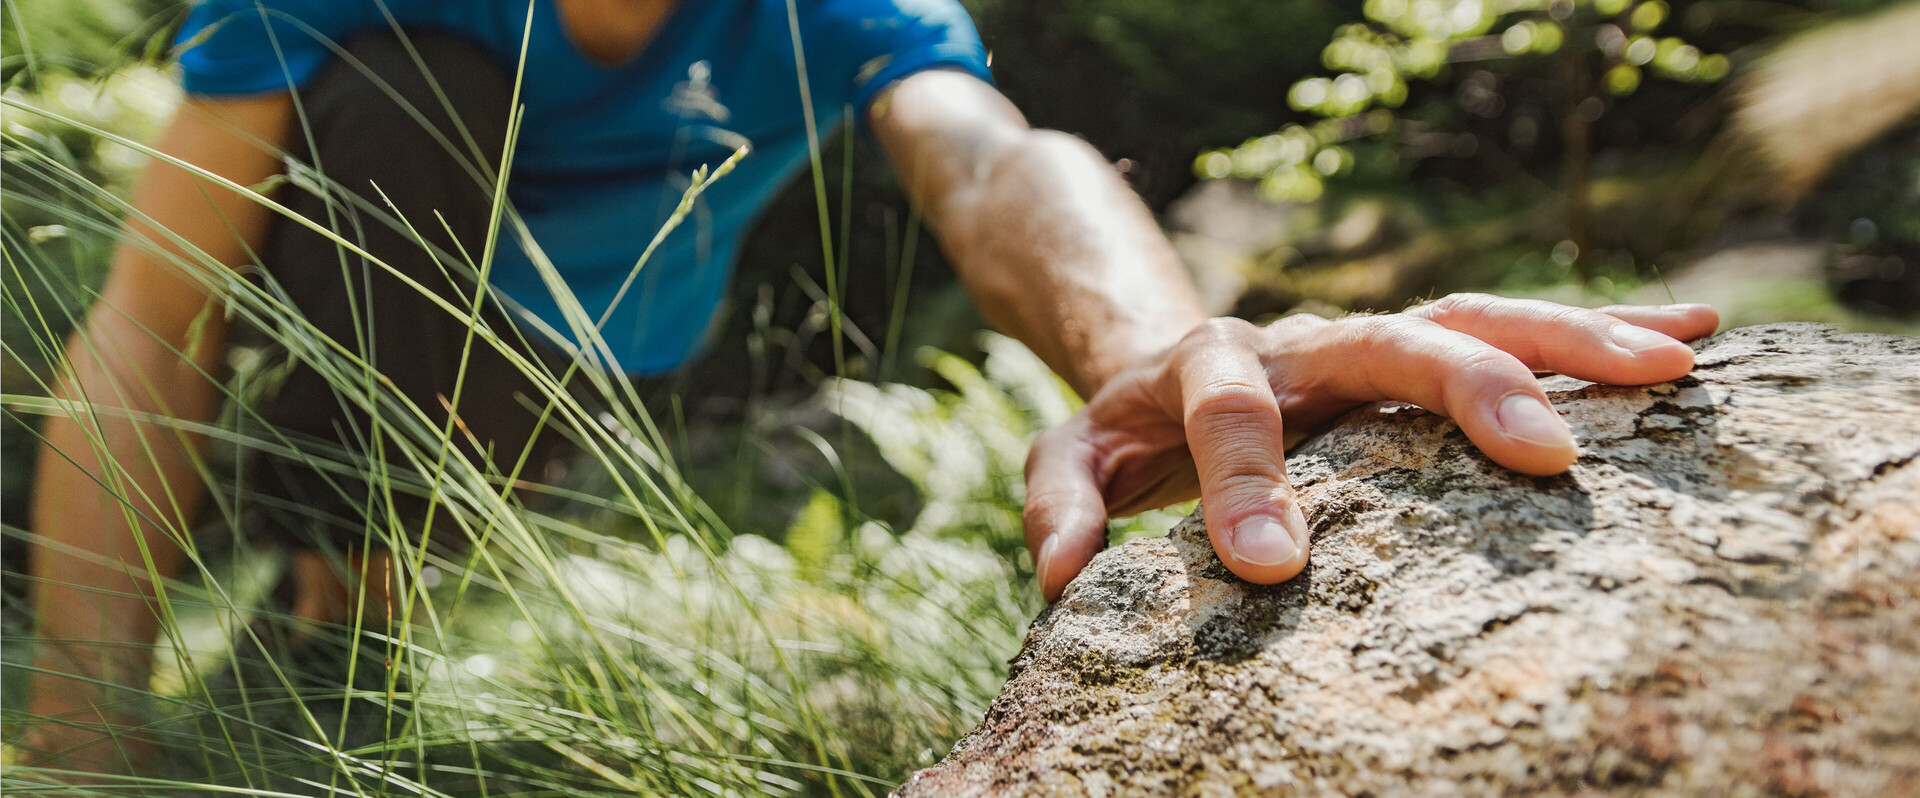 Im Vordergrund greift die Hand eines Kletterers nach einem Felsen. Das Bild steht für die Produktlinie Sixtus Hand.